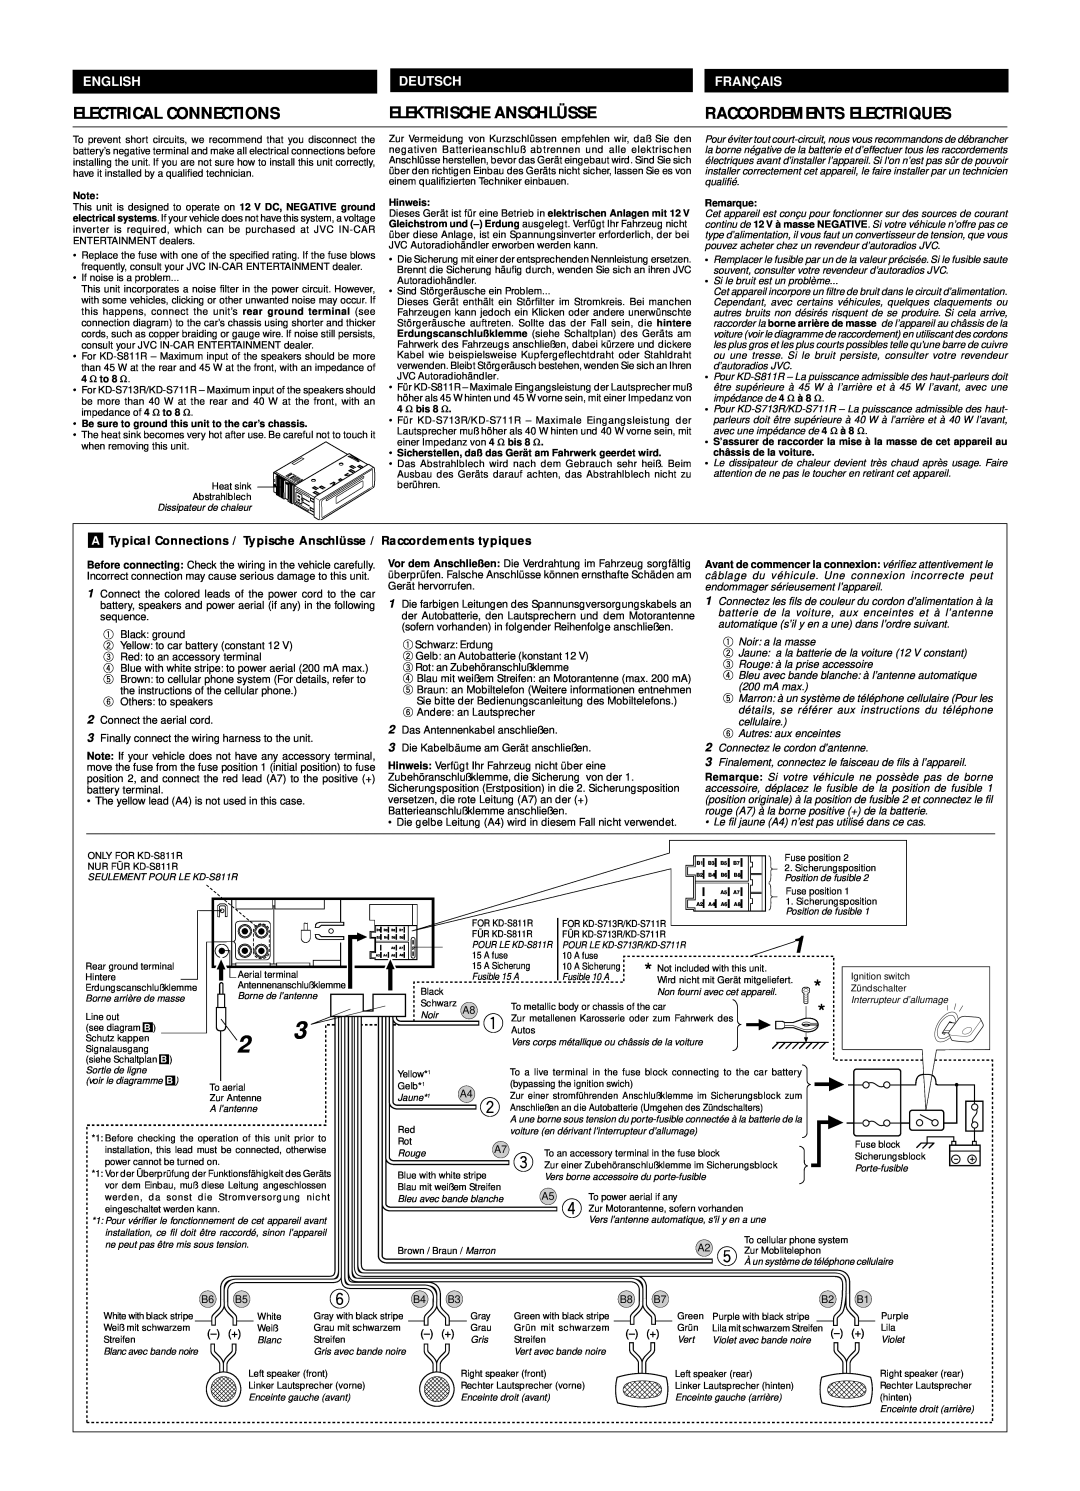 JVC KD-S811R manual Electrical Connections, Elektrische Anschlüsse, Franç Ais, Raccordements Electriques, English, Deutsch 